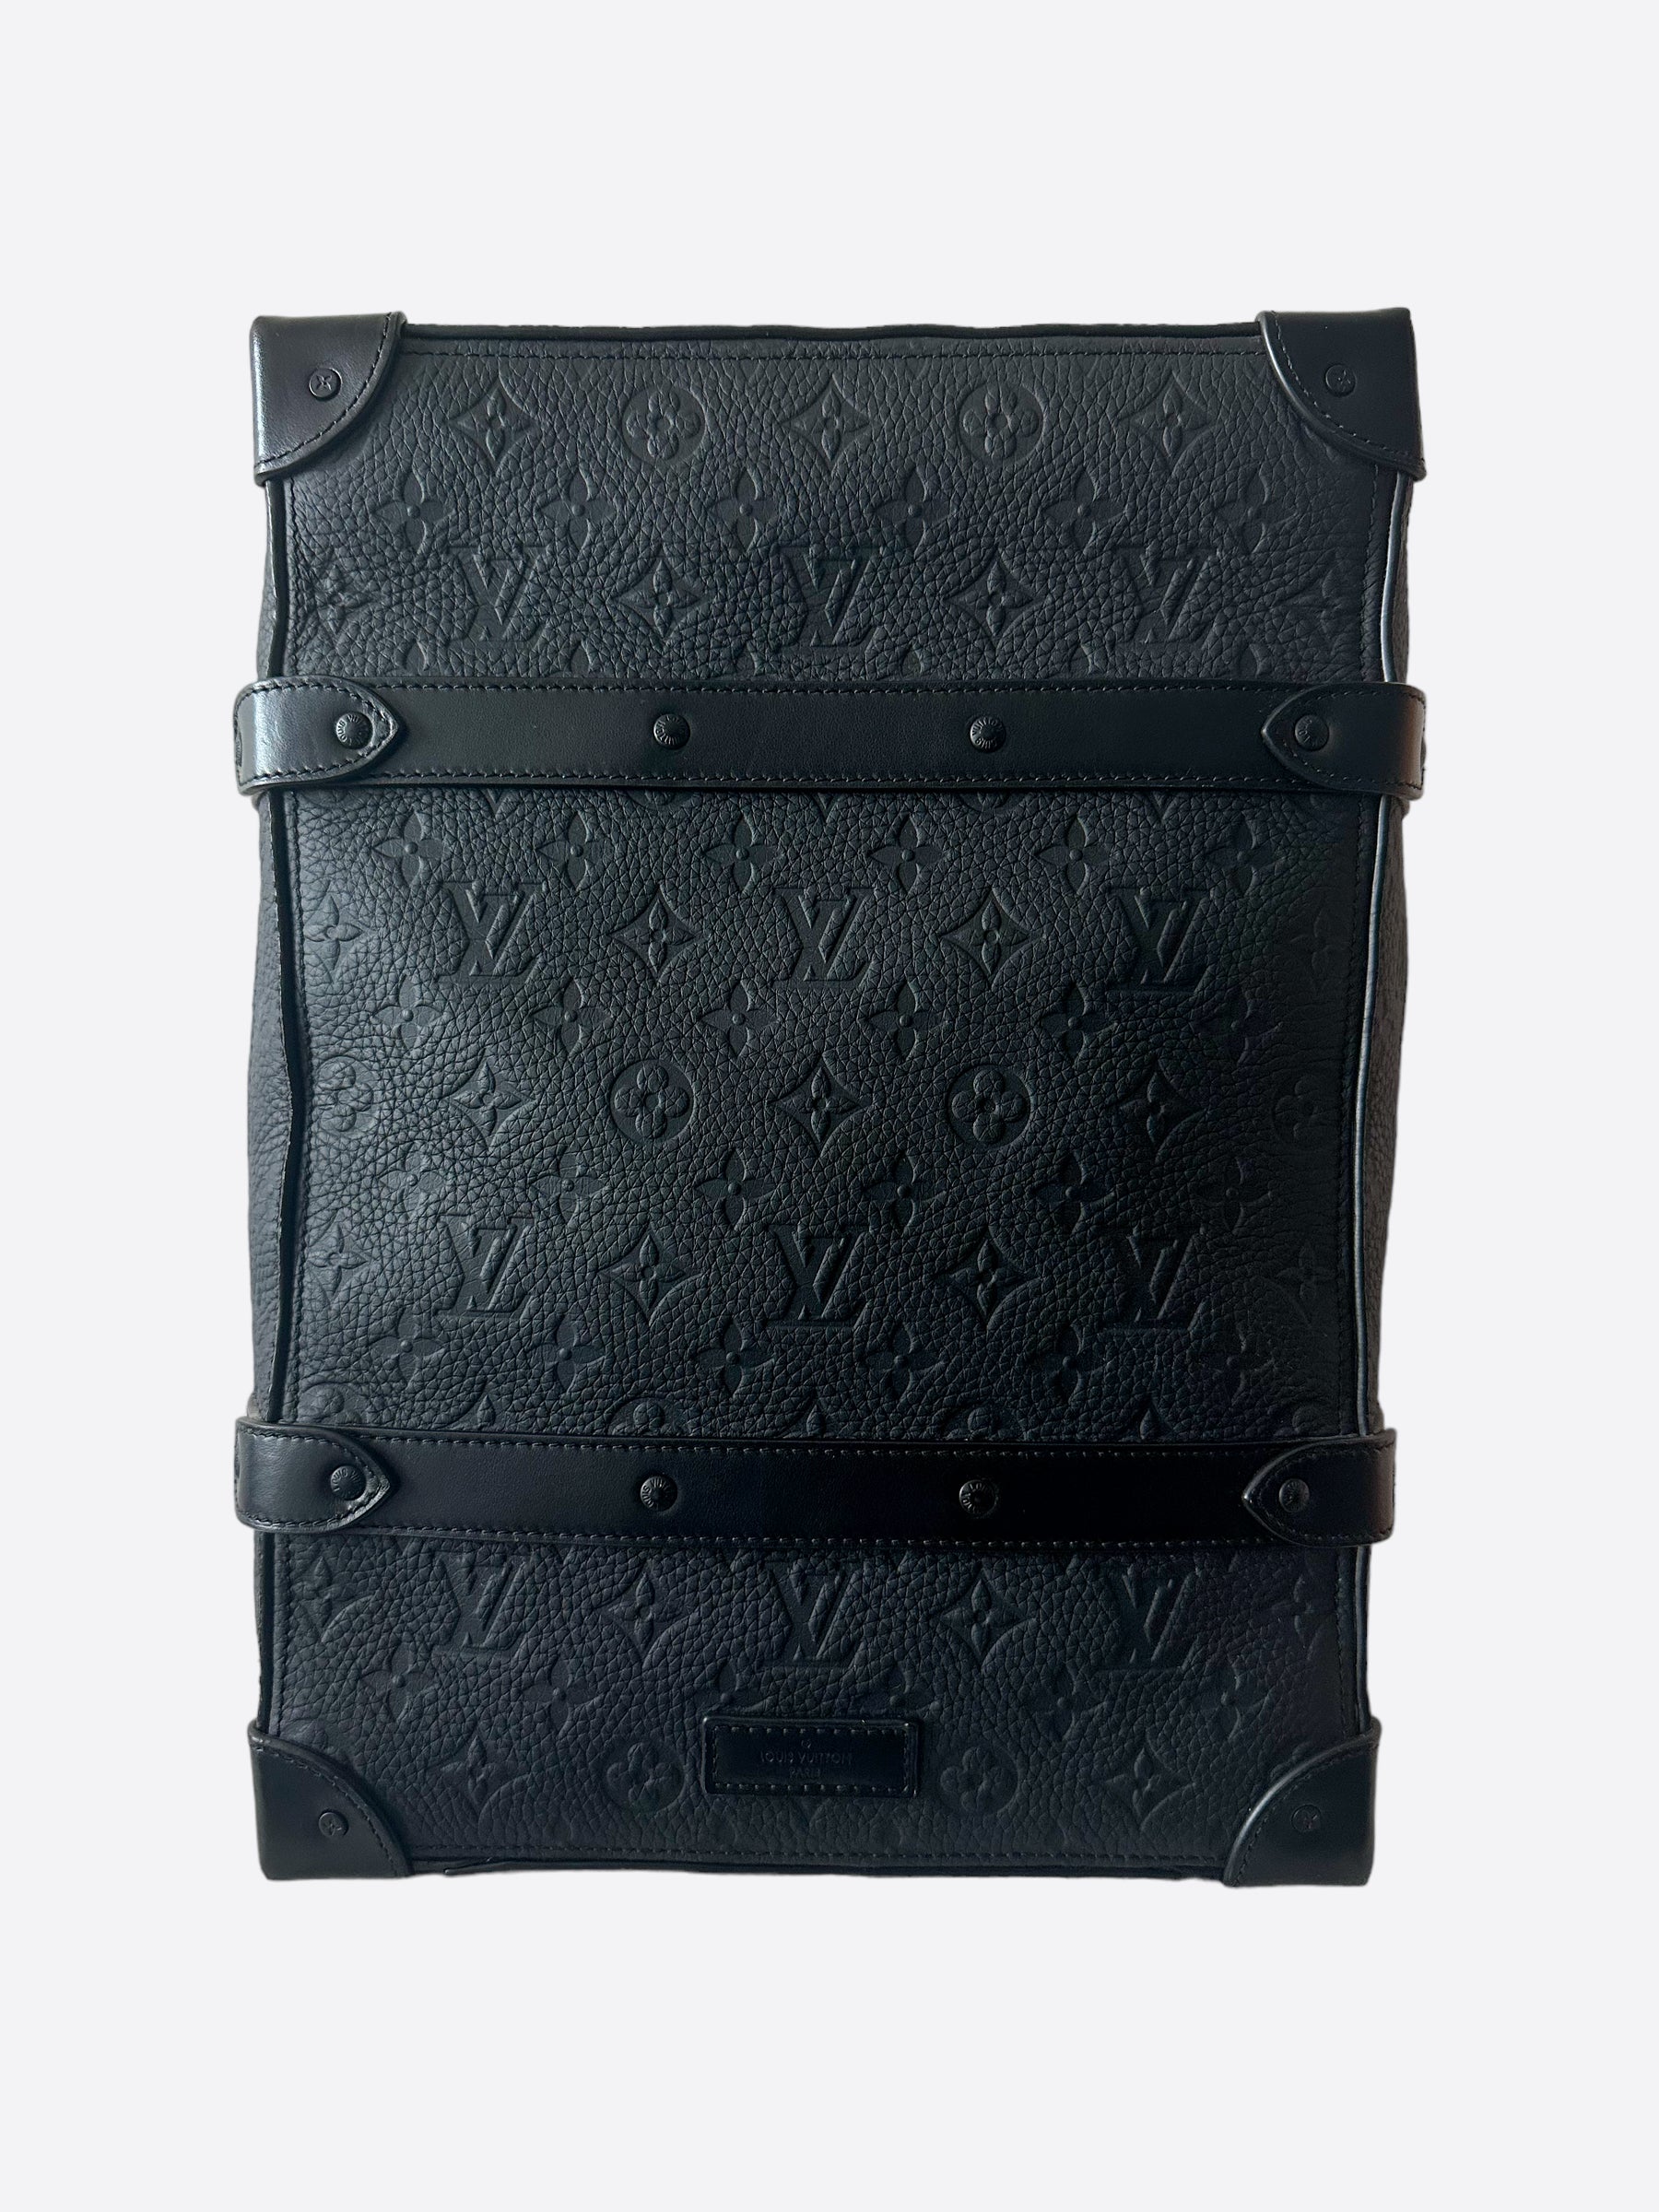 lv soft trunk backpack black